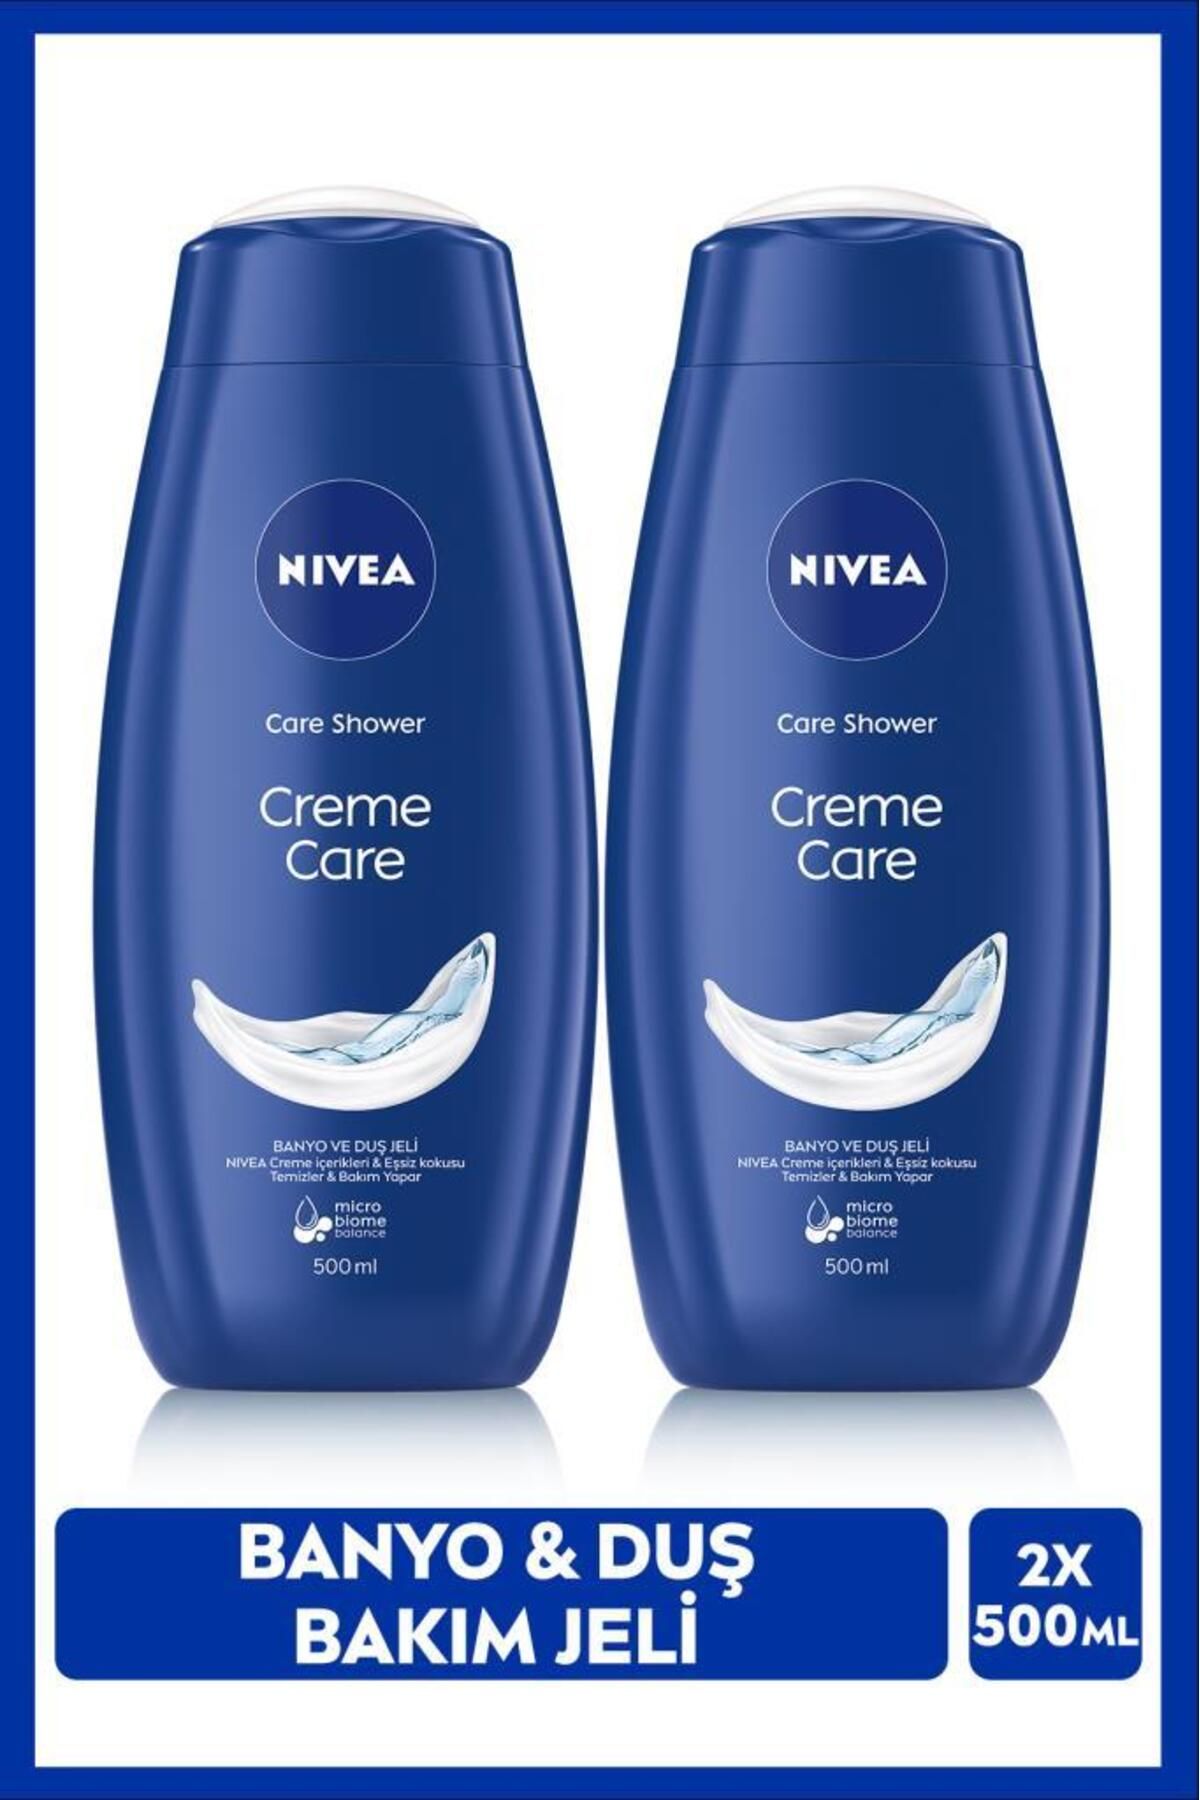 NIVEA Creme Care Banyo Ve Duş Jeli 500 M X2 Adet, Vücut Nemlendirme Ve Eşsiz Koku